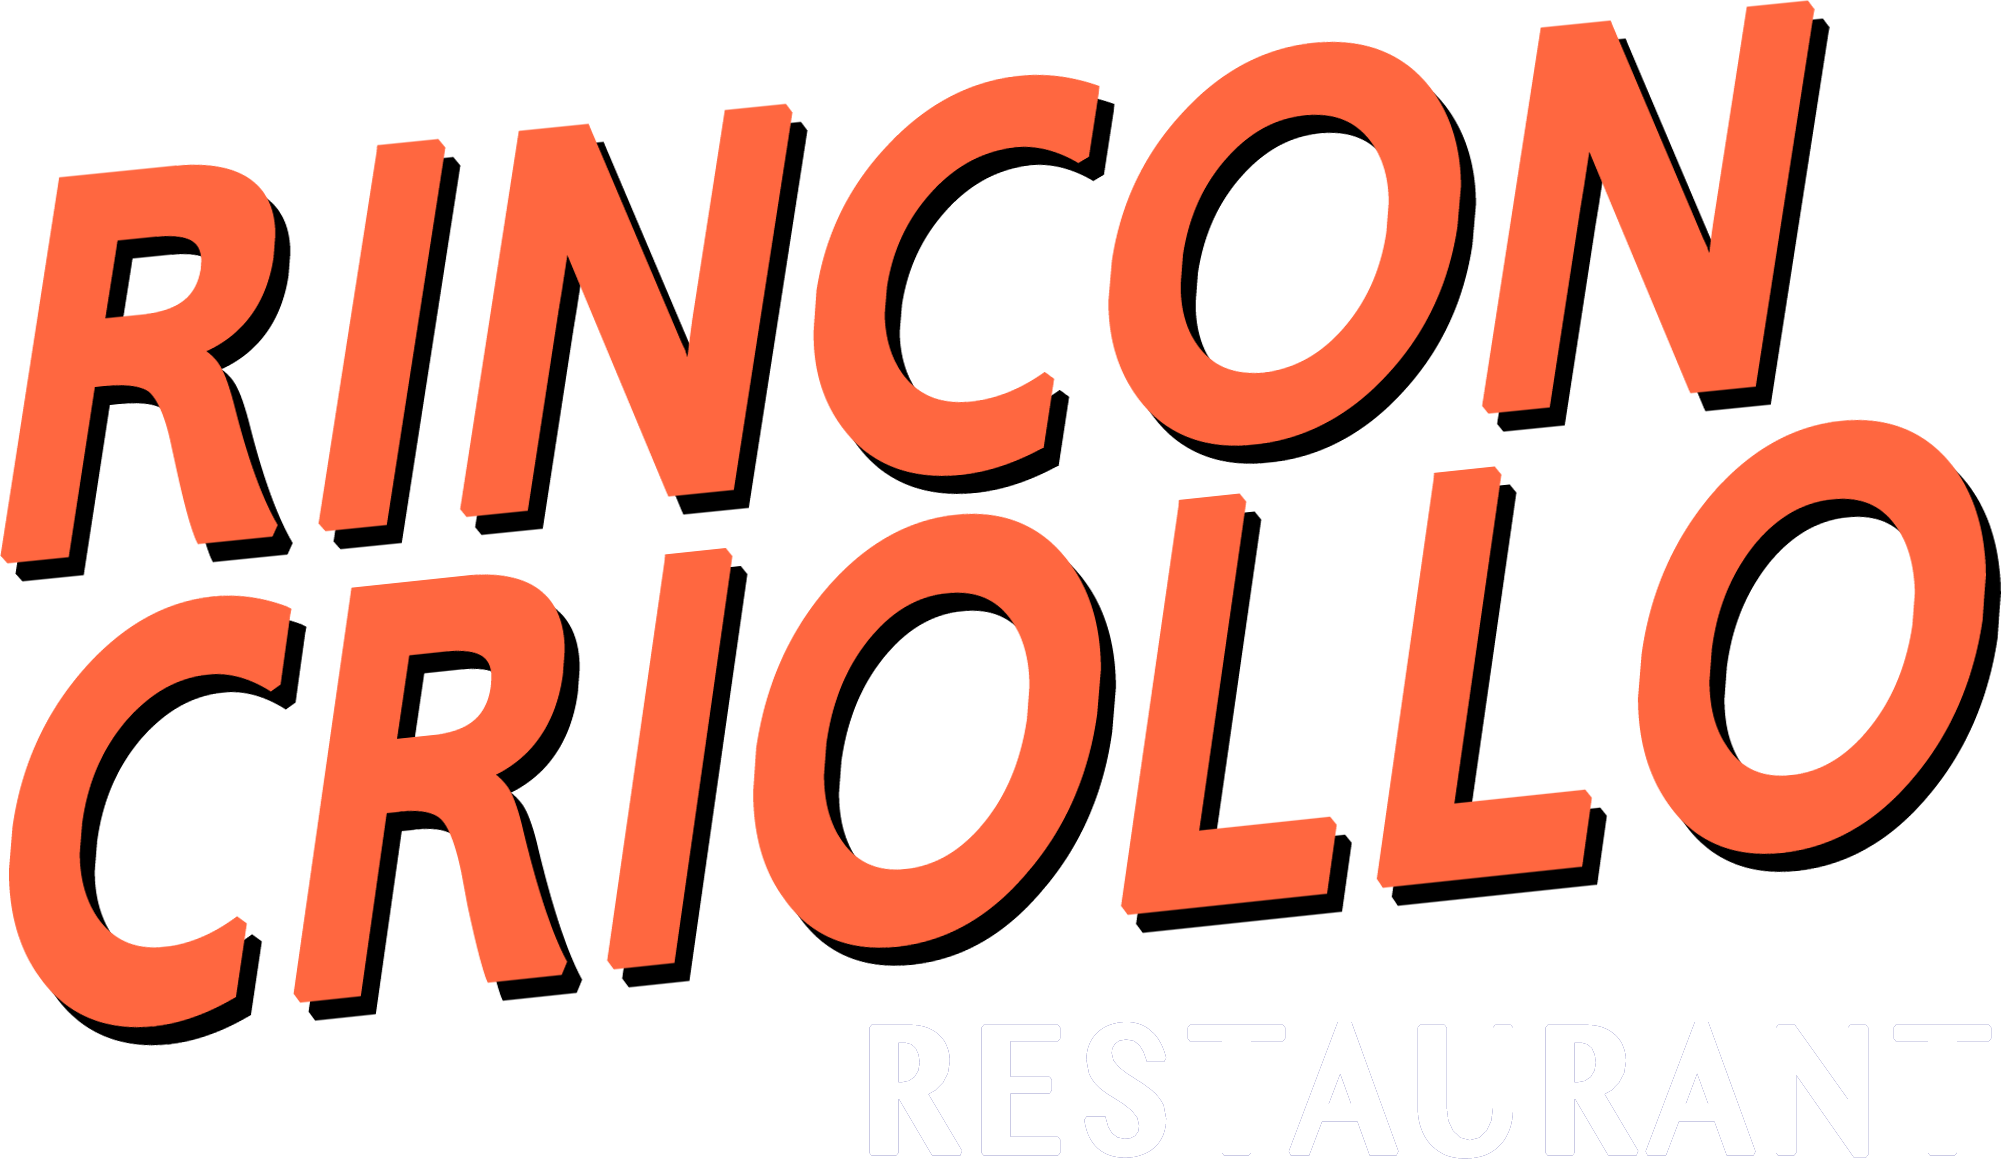 Rincon Criollo Logo Kitchen Bar